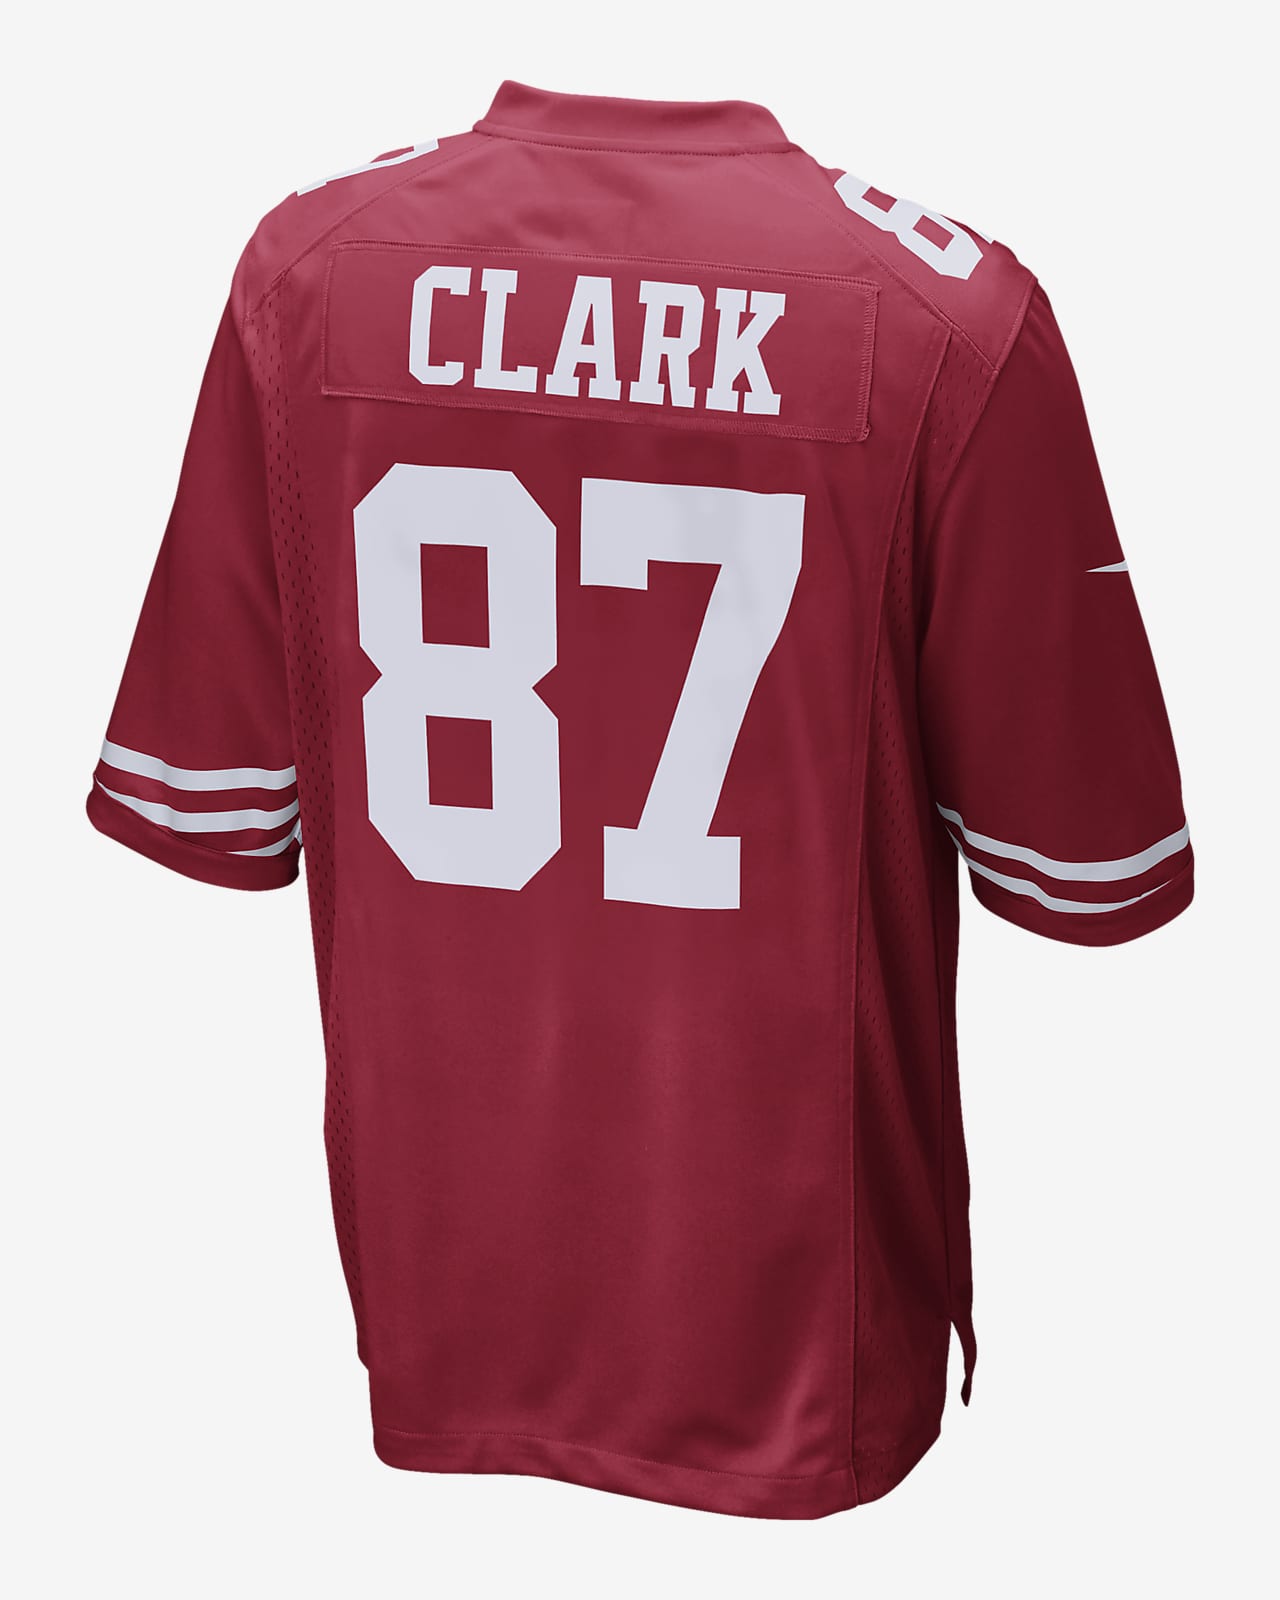 dwight clark 49ers jersey